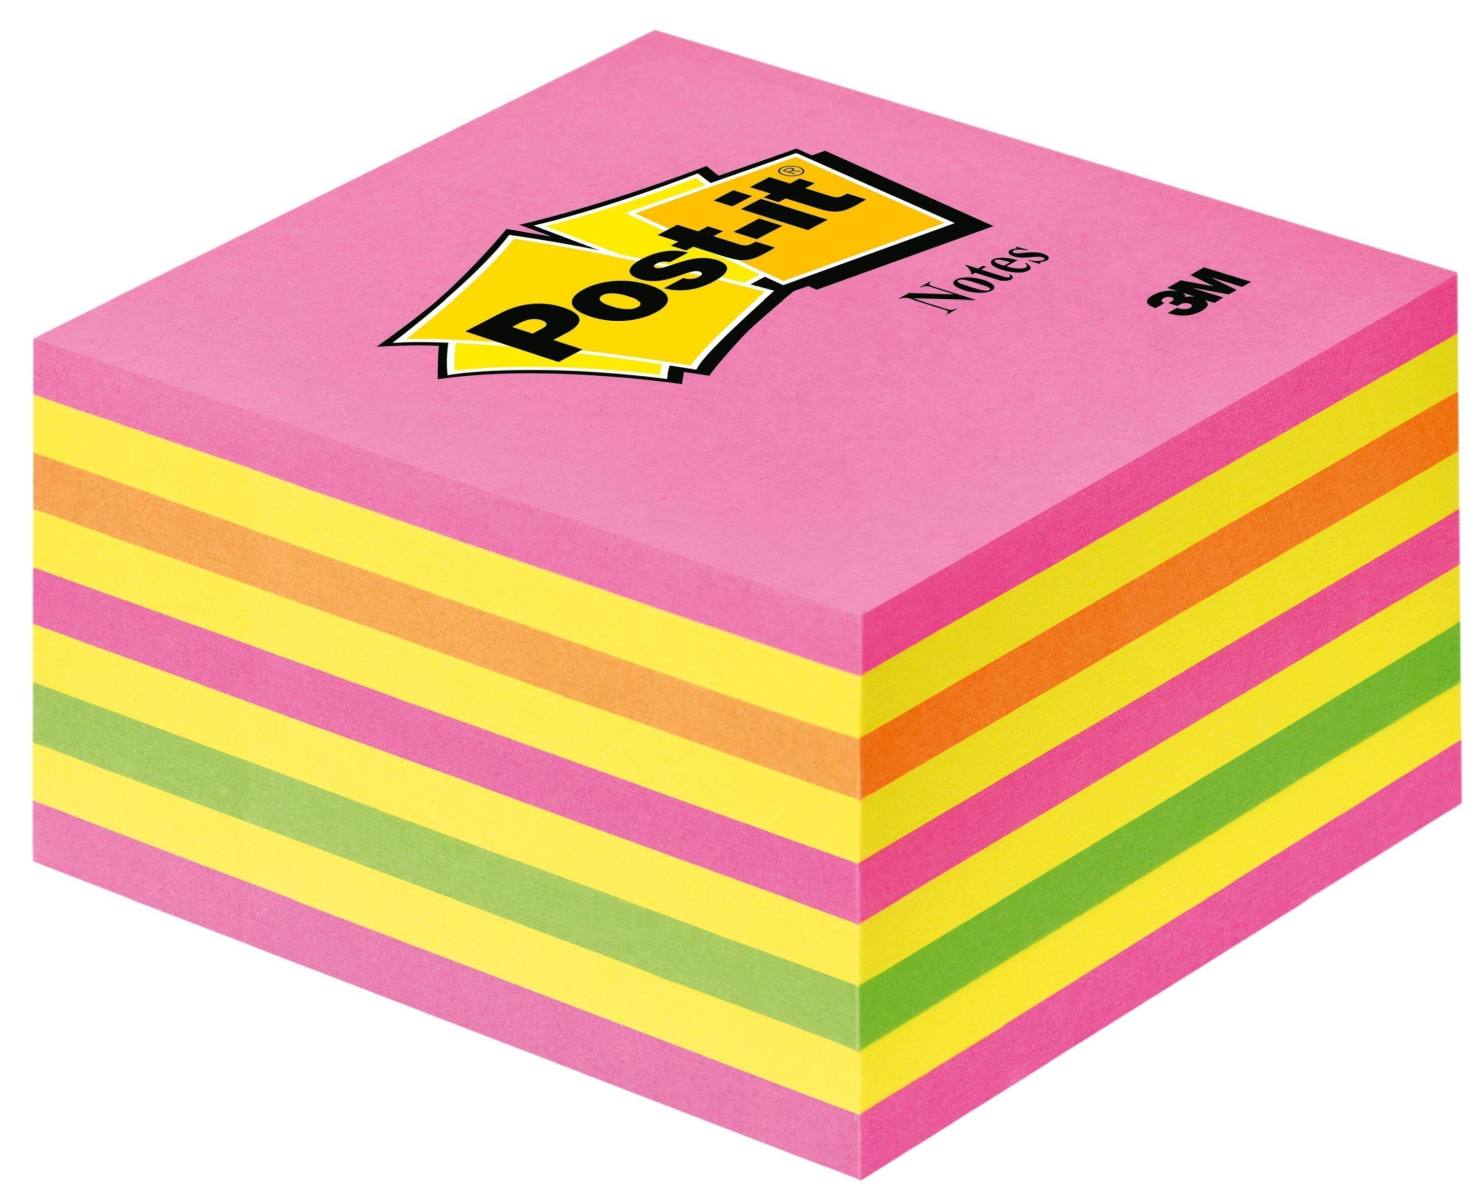 cubo 3M Post-it 2028NP, 76 mm x 76 mm, giallo, verde neon, rosa neon, rosa, 1 cubo da 450 fogli, confezione=12 pezzi